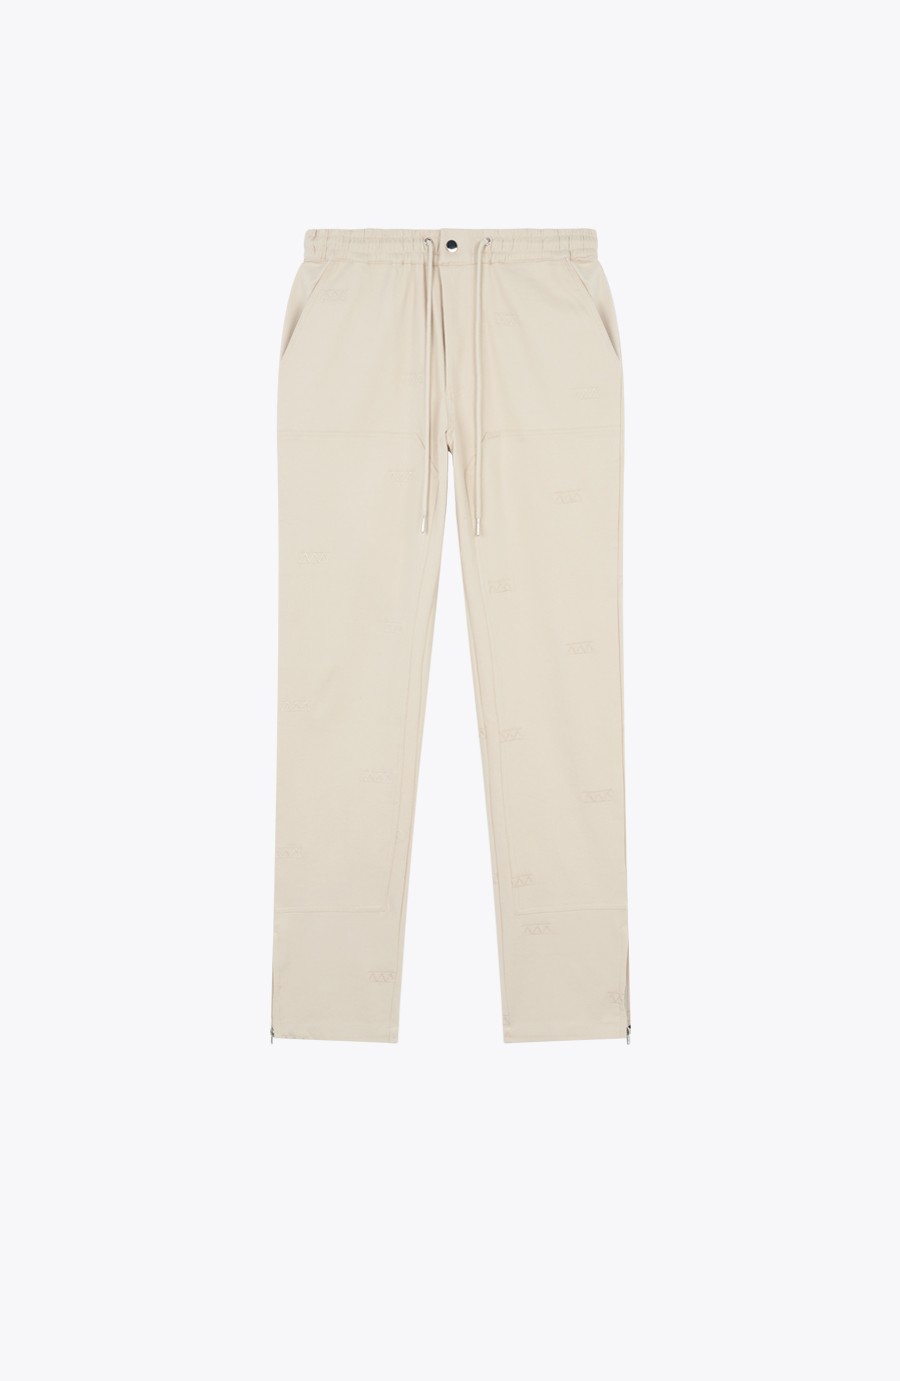 Pantalon cargo beige coupe droite détail zip aux chevilles